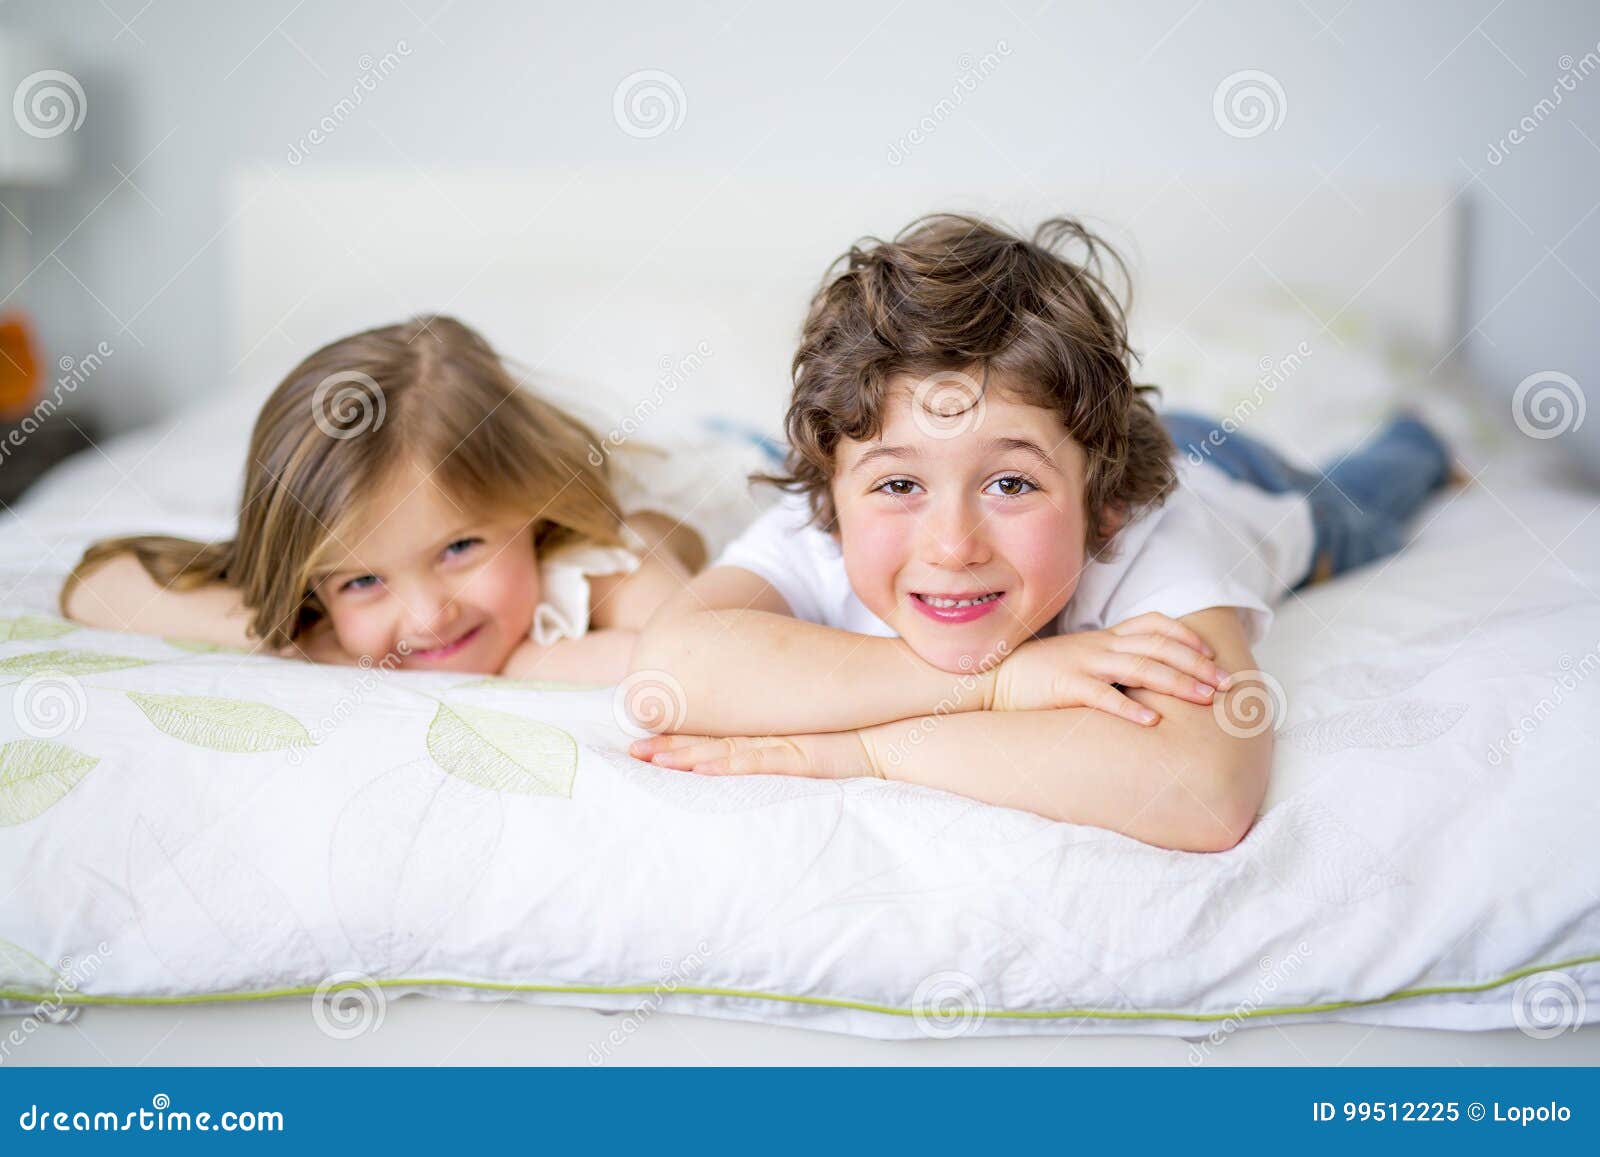 Пришел к сестре в кровать. Брат и сестра в кровати. Брат и сестренка в постели. С младшим братом в постельке. Сестры в пижамах кровать.